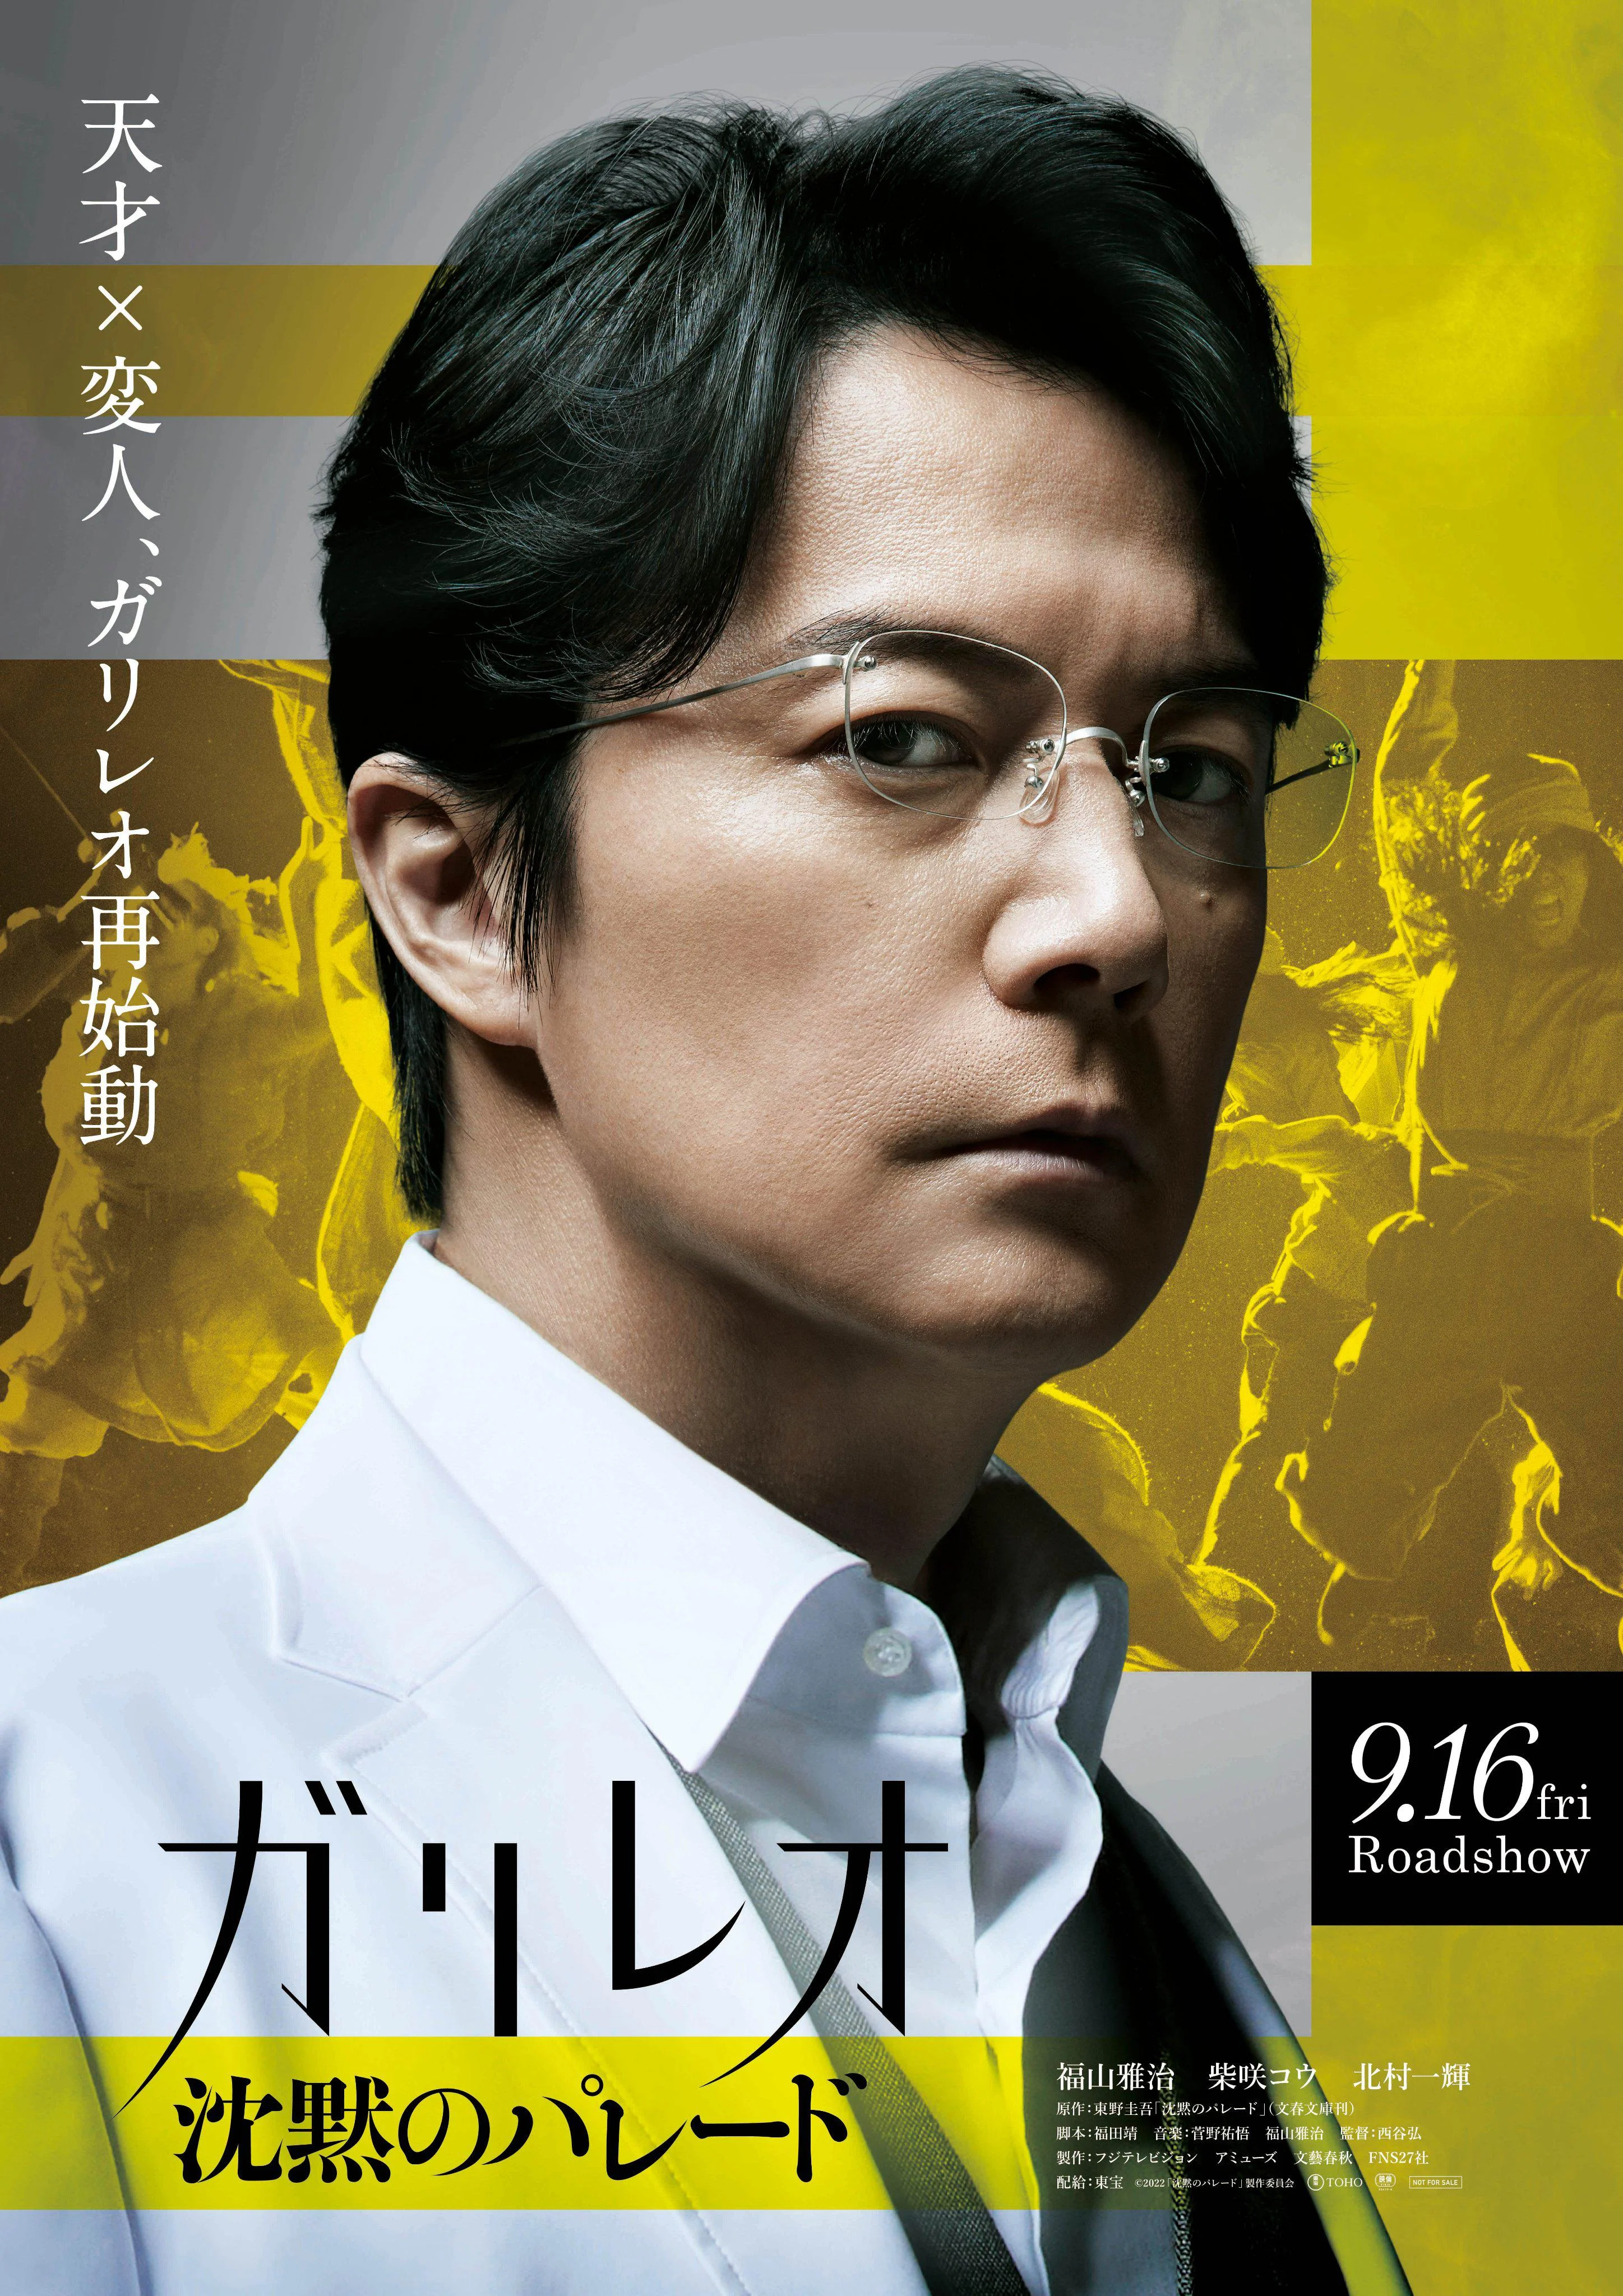 "沈黙のパレード‎" first exposure trailer and poster